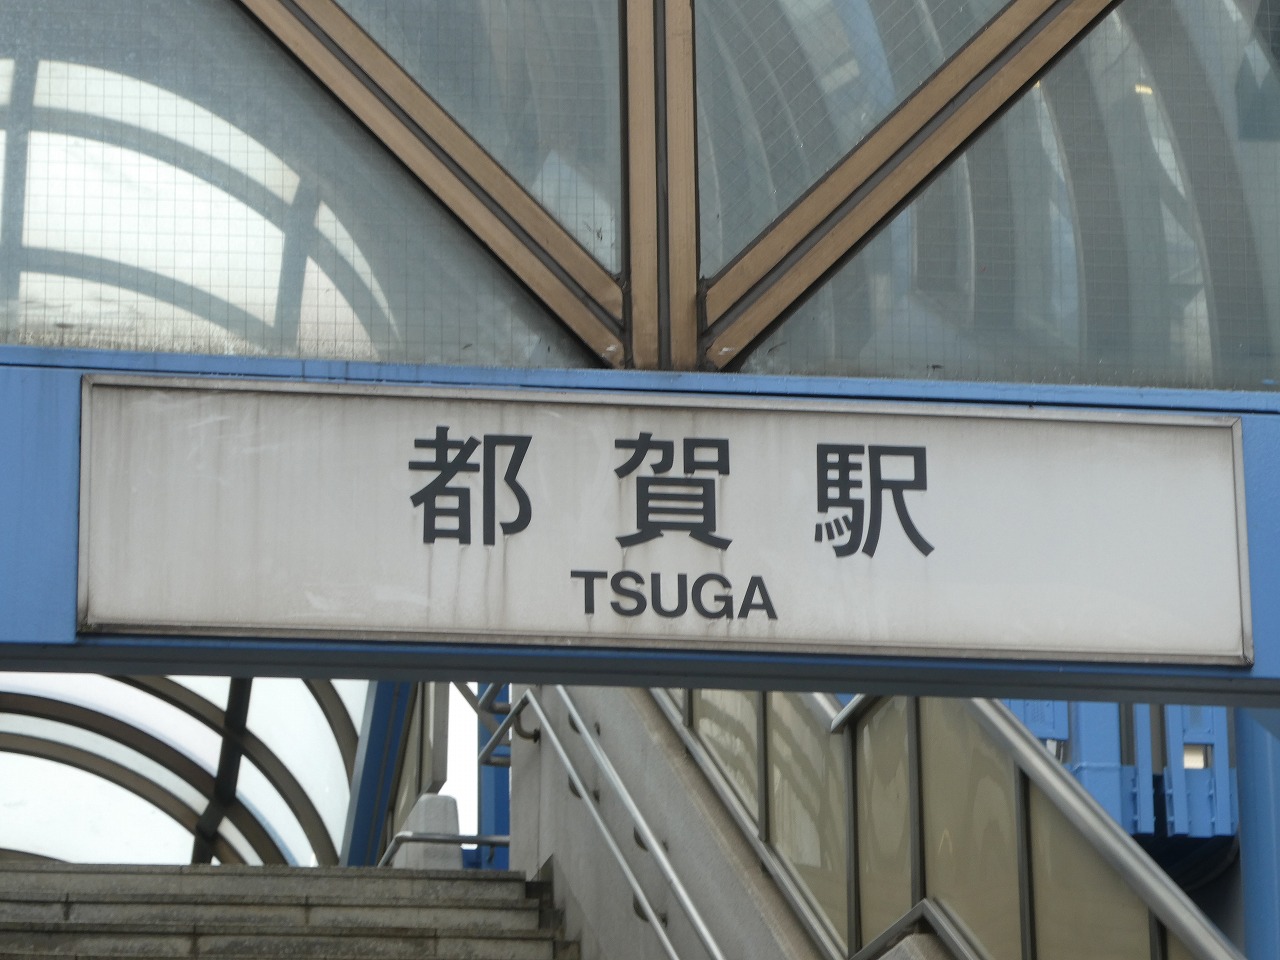 都賀駅の文字